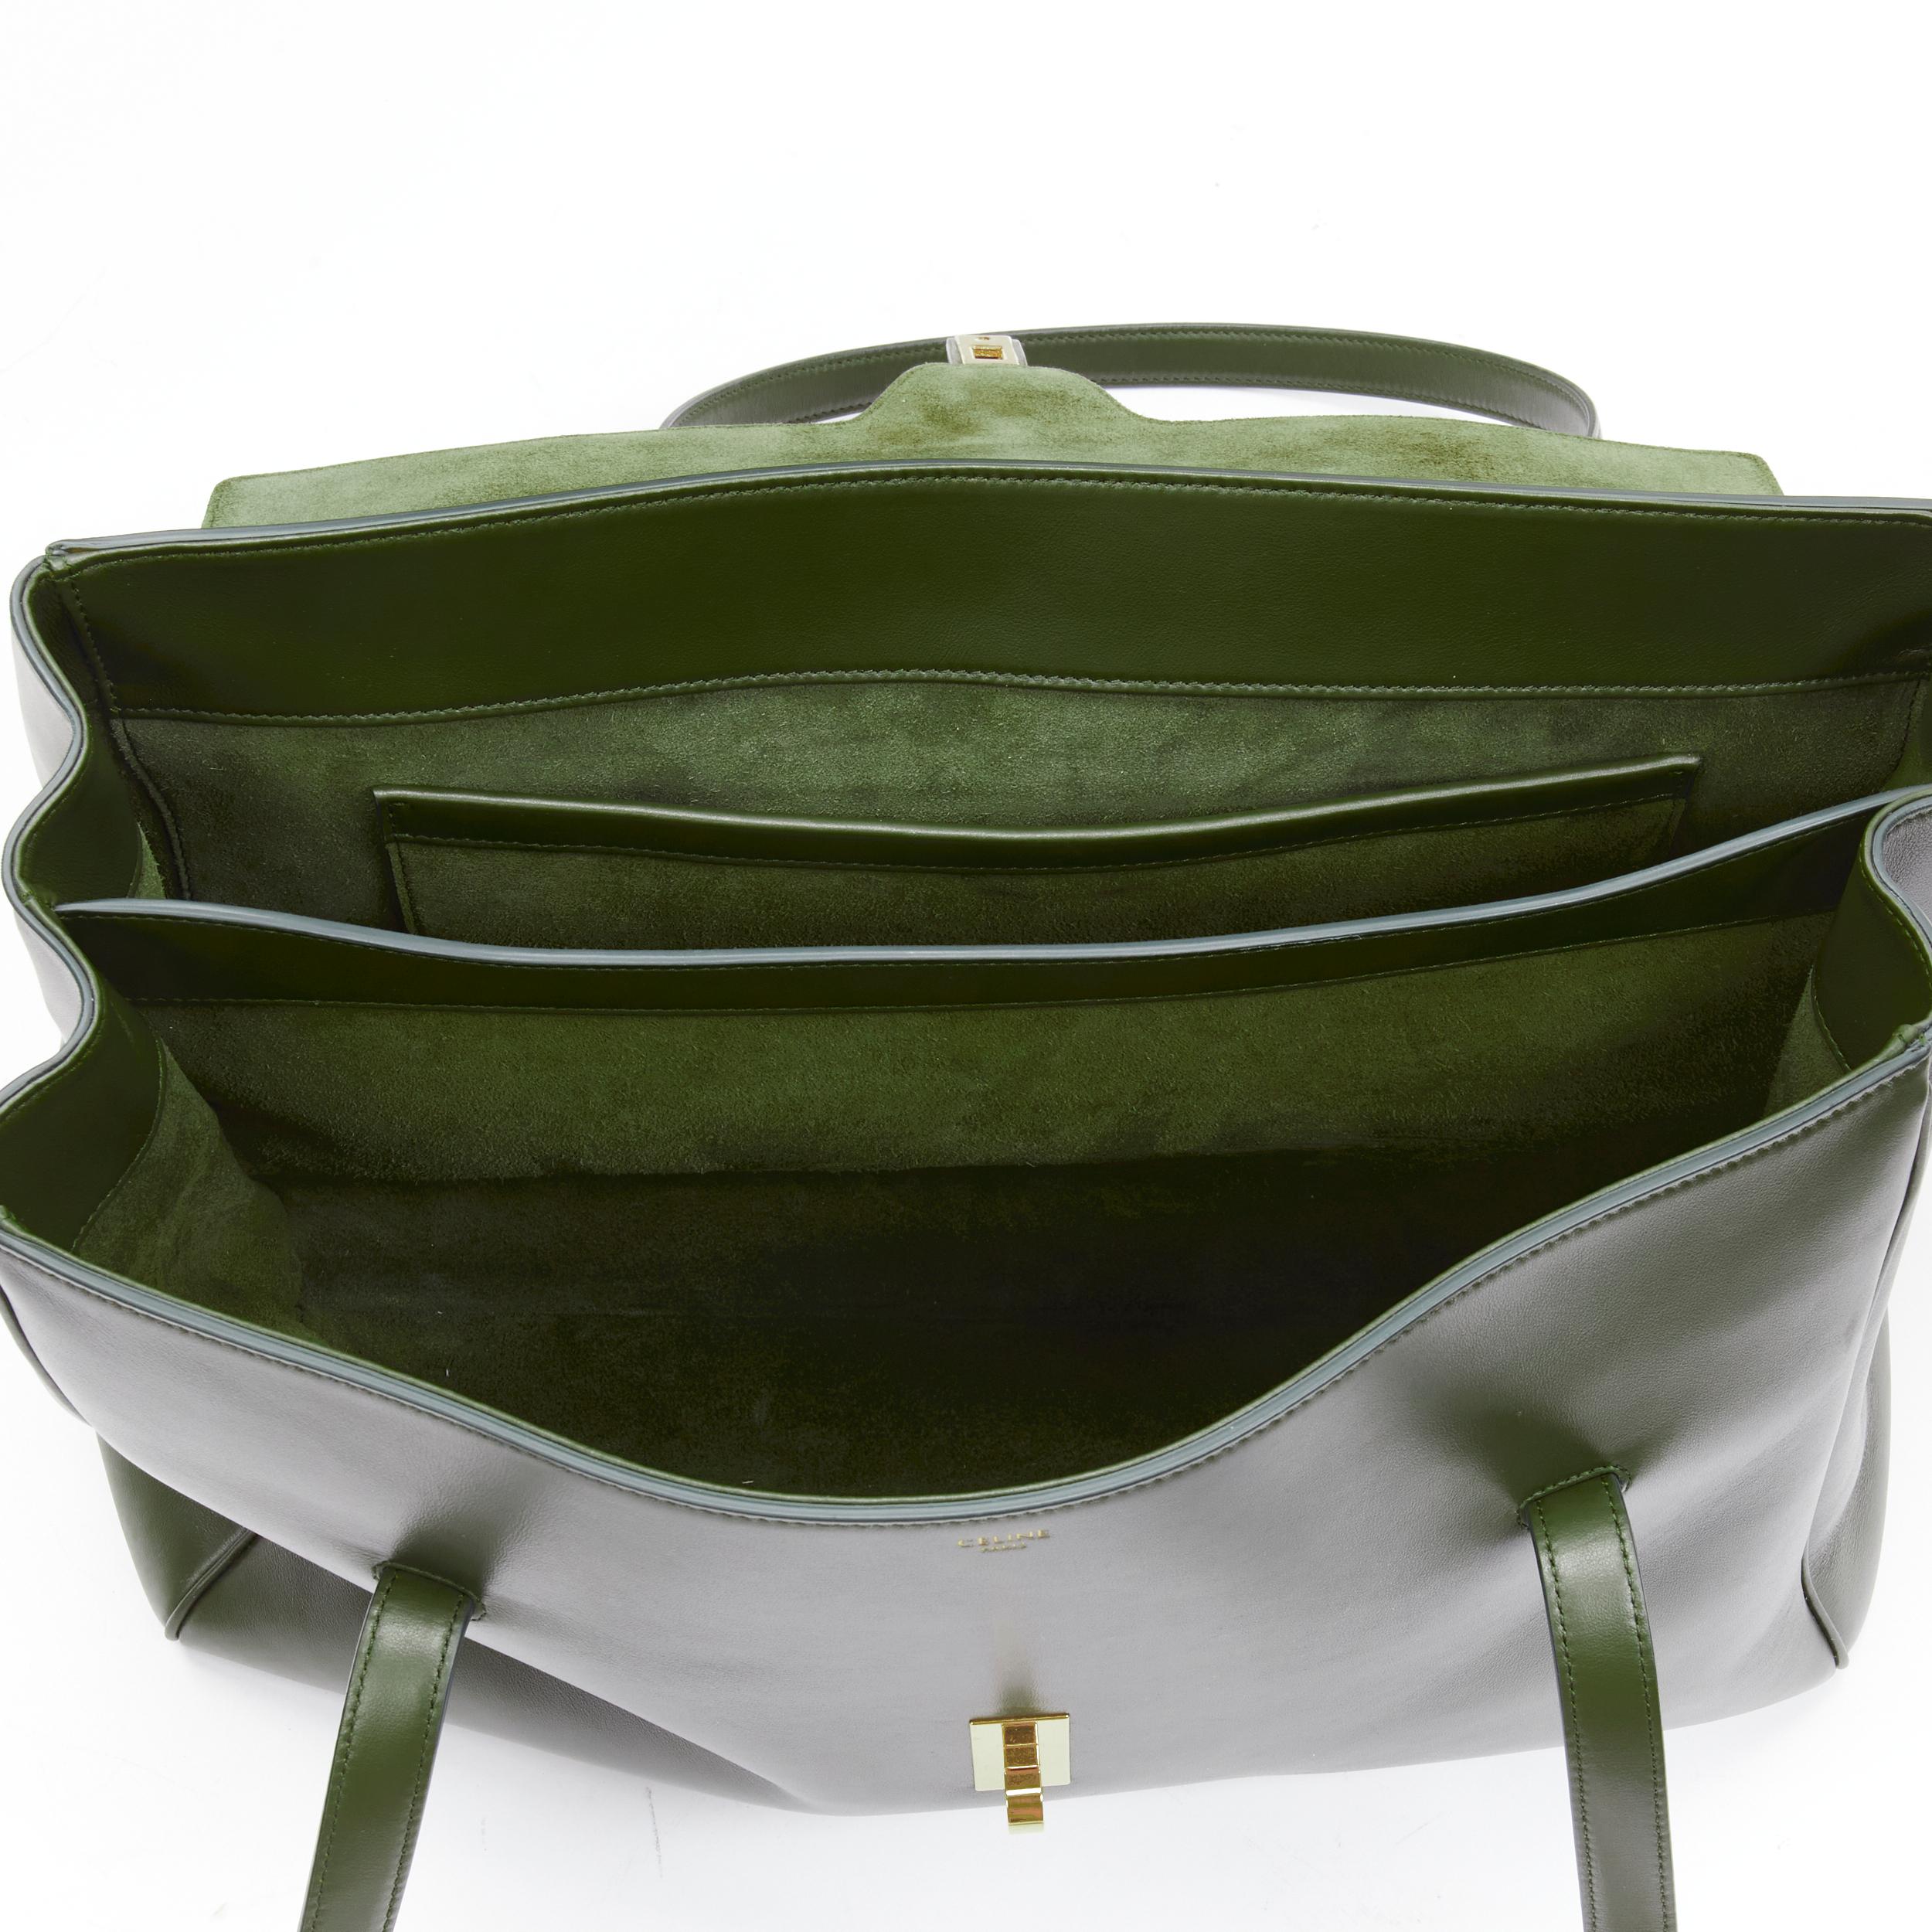 CELINE Hedi Slimane Large Soft 16 bag khaki green smooth calfskin turnlock bag 4